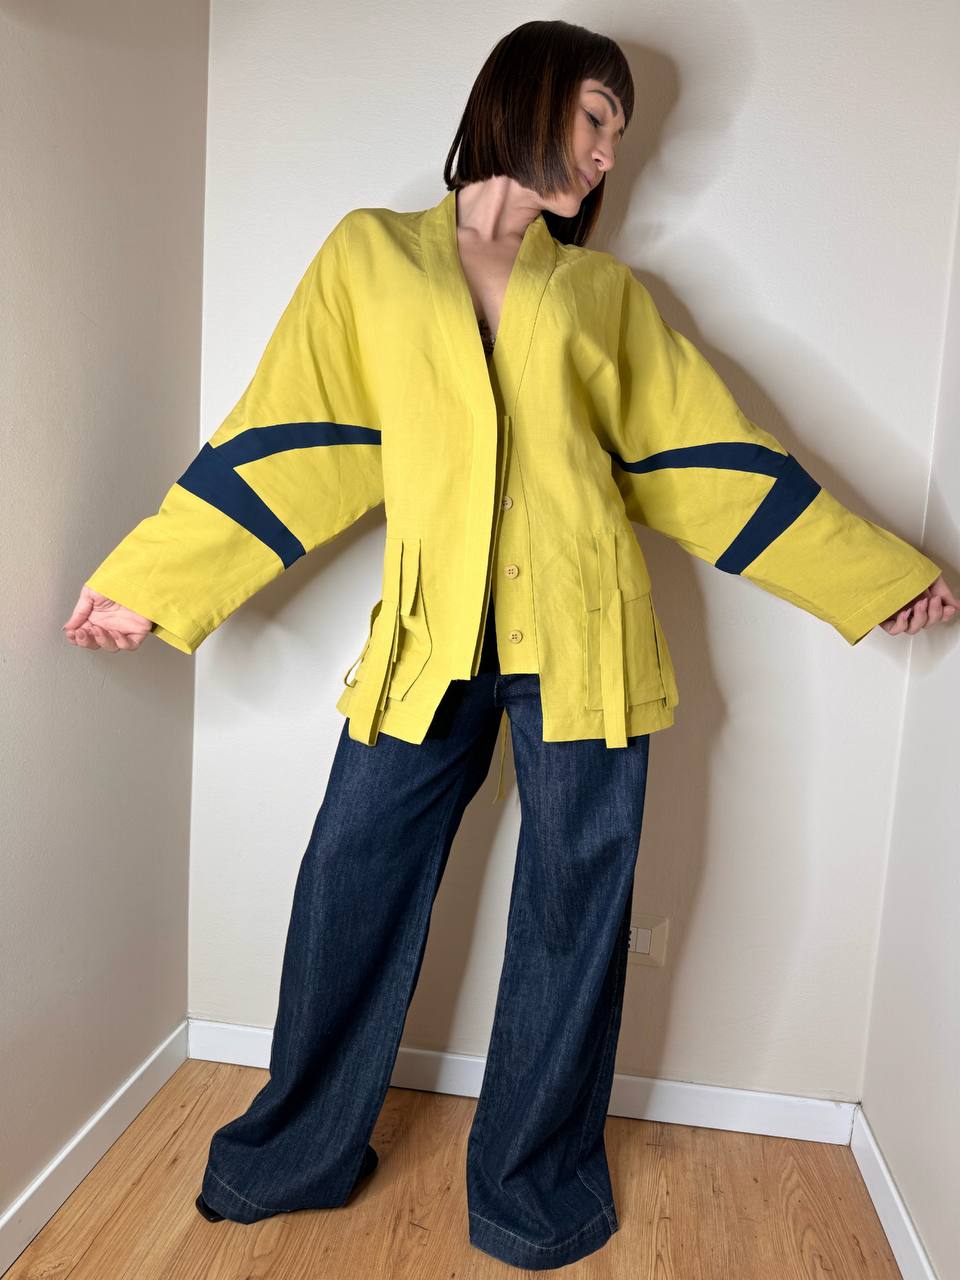 Giacca kimono giallo e blu